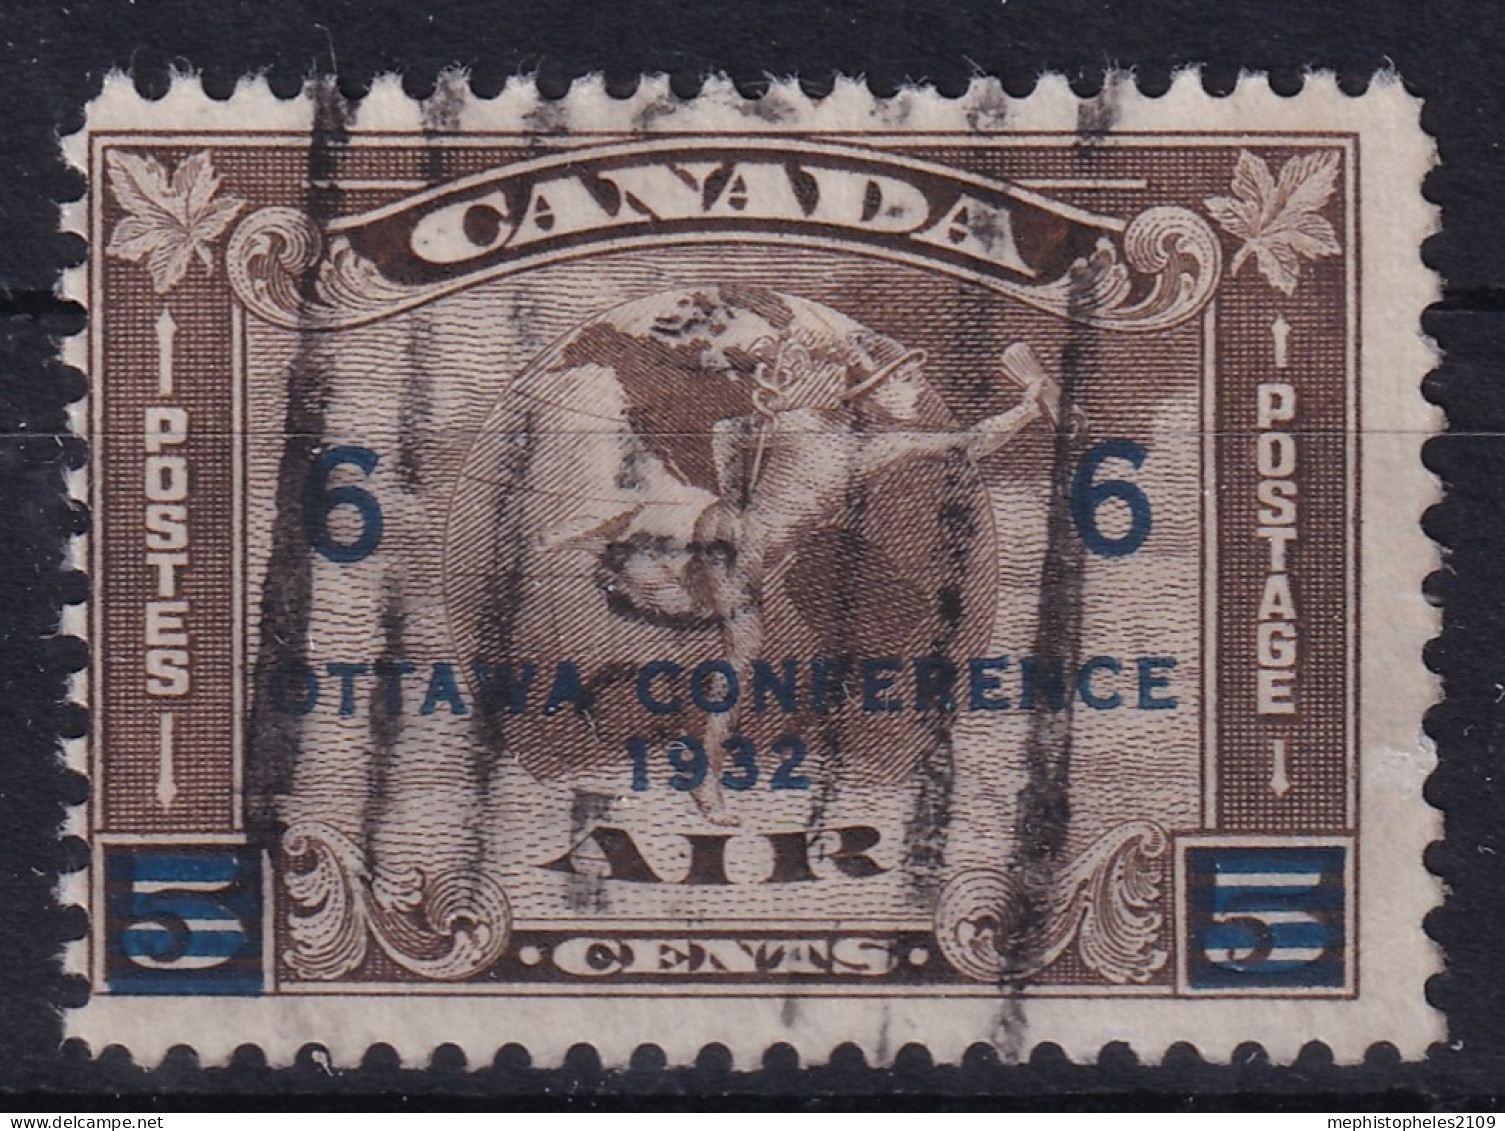 CANADA 1932 - Canceled - Sc# C4 - Air Mail - Airmail